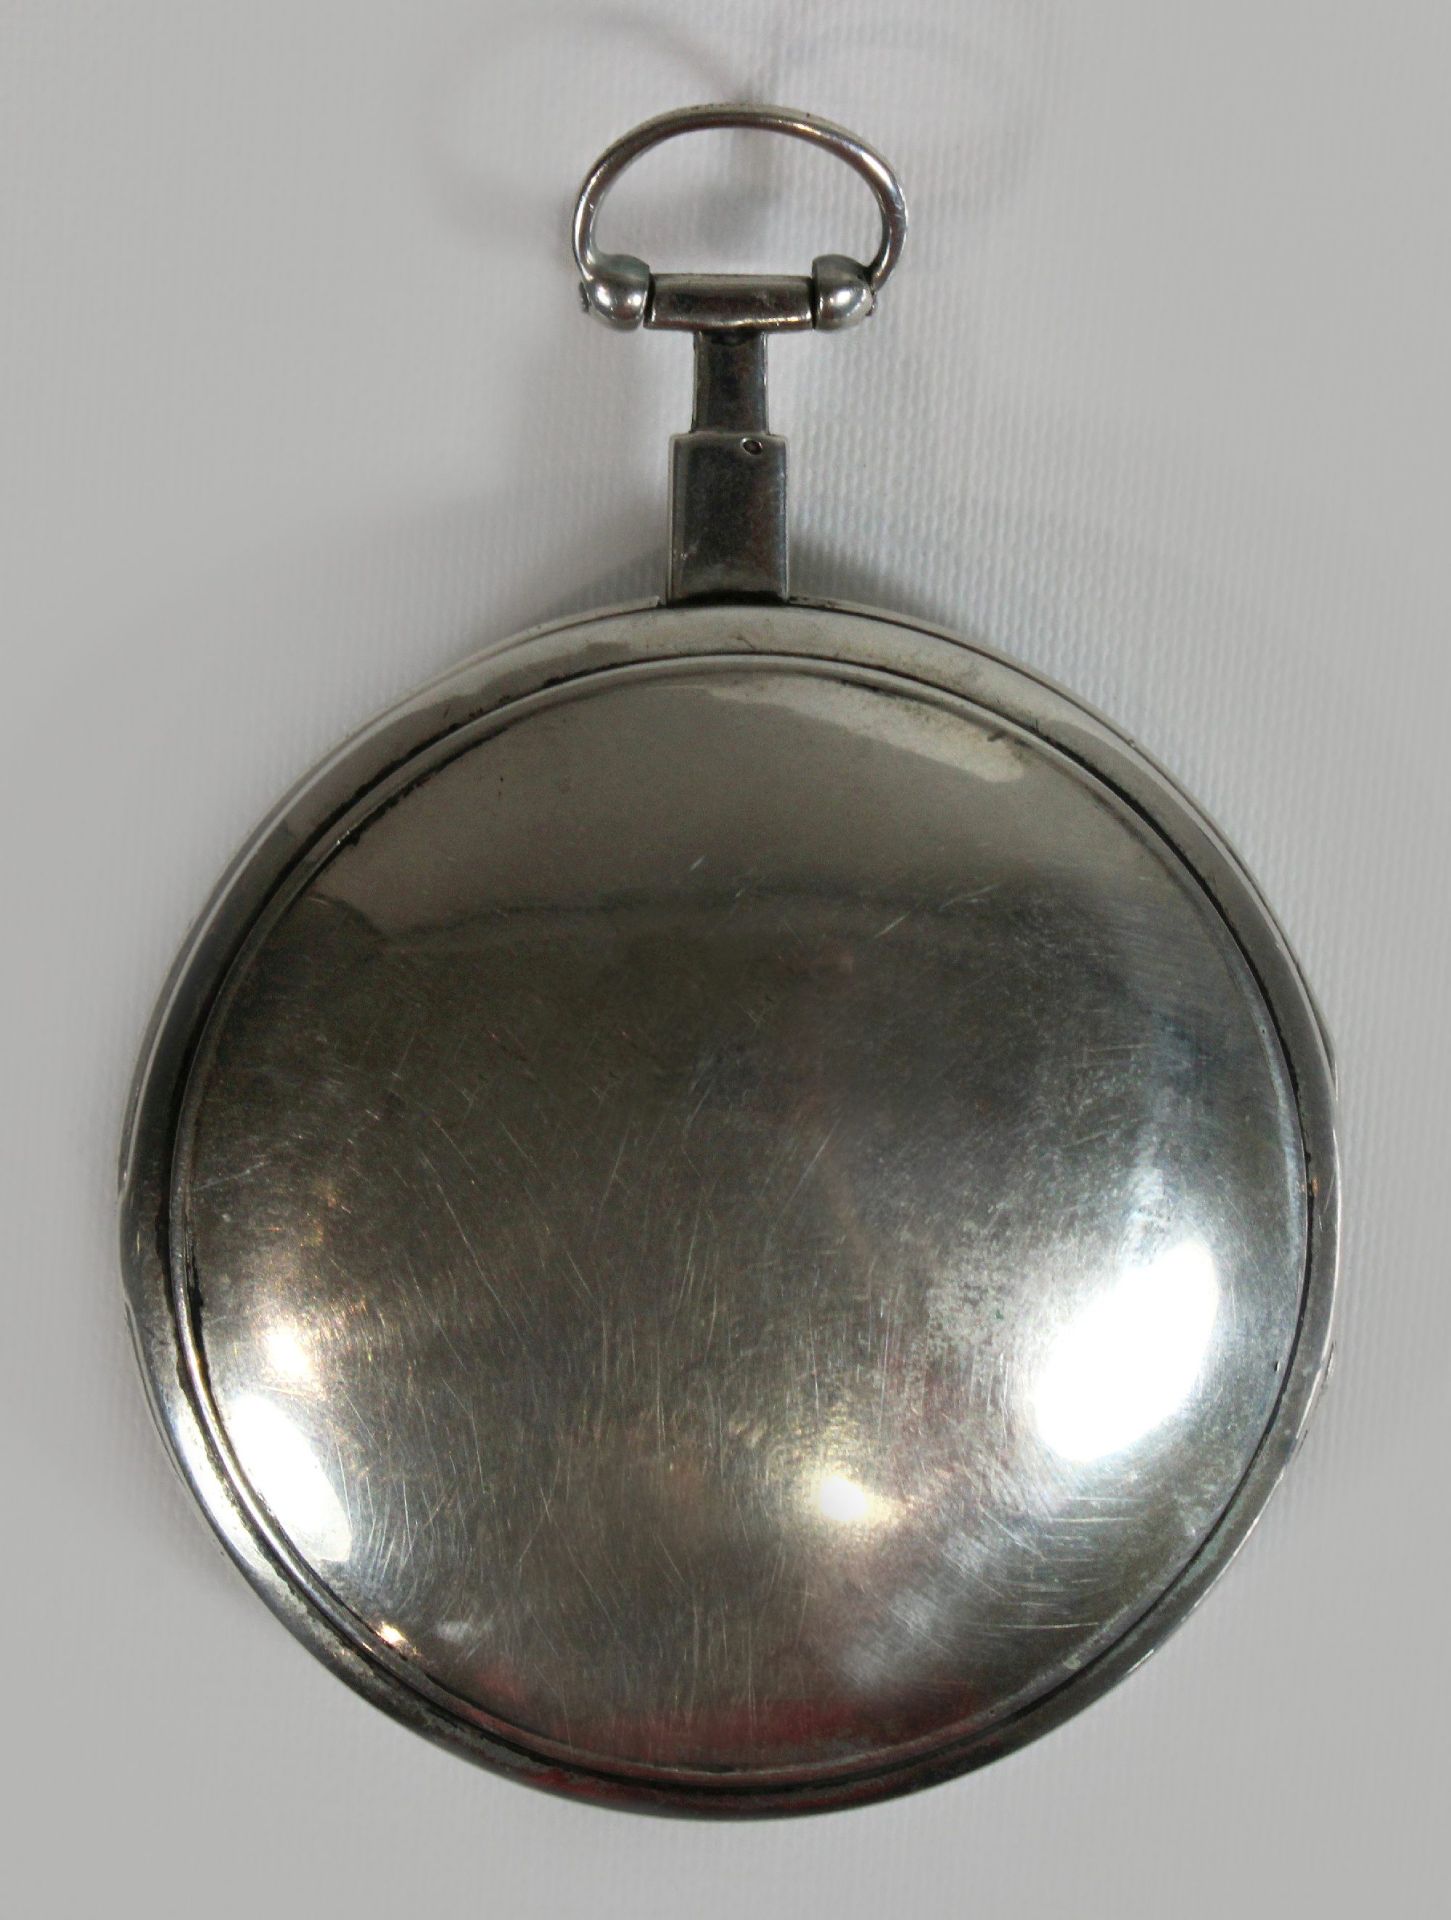 Breguet Schlüsseluhr, um 1800, Frankreich, Silber, Uhrwerk bez. Breguet a Paris, Gehäuse-Nr.: 5946, - Bild 3 aus 5